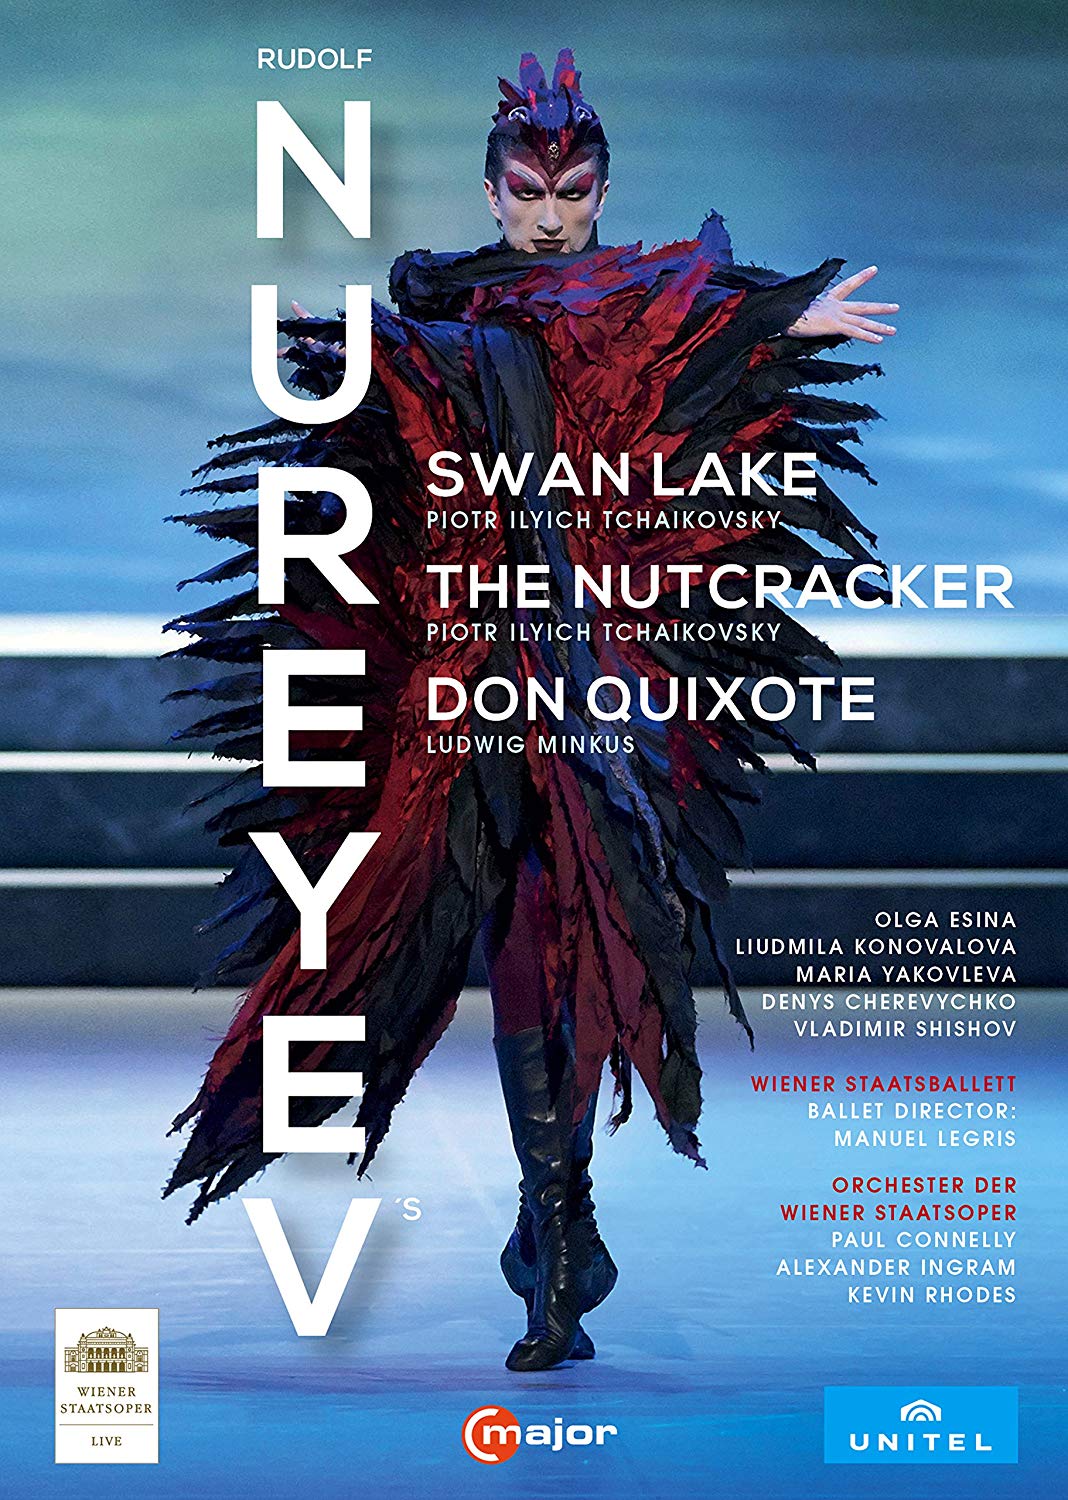 Music Dvd Rudolf Nureyev Box - Swan Lake, The Nutcracker, Don Quixote (3 Dvd) NUOVO SIGILLATO, EDIZIONE DEL 05/07/2018 SUBITO DISPONIBILE